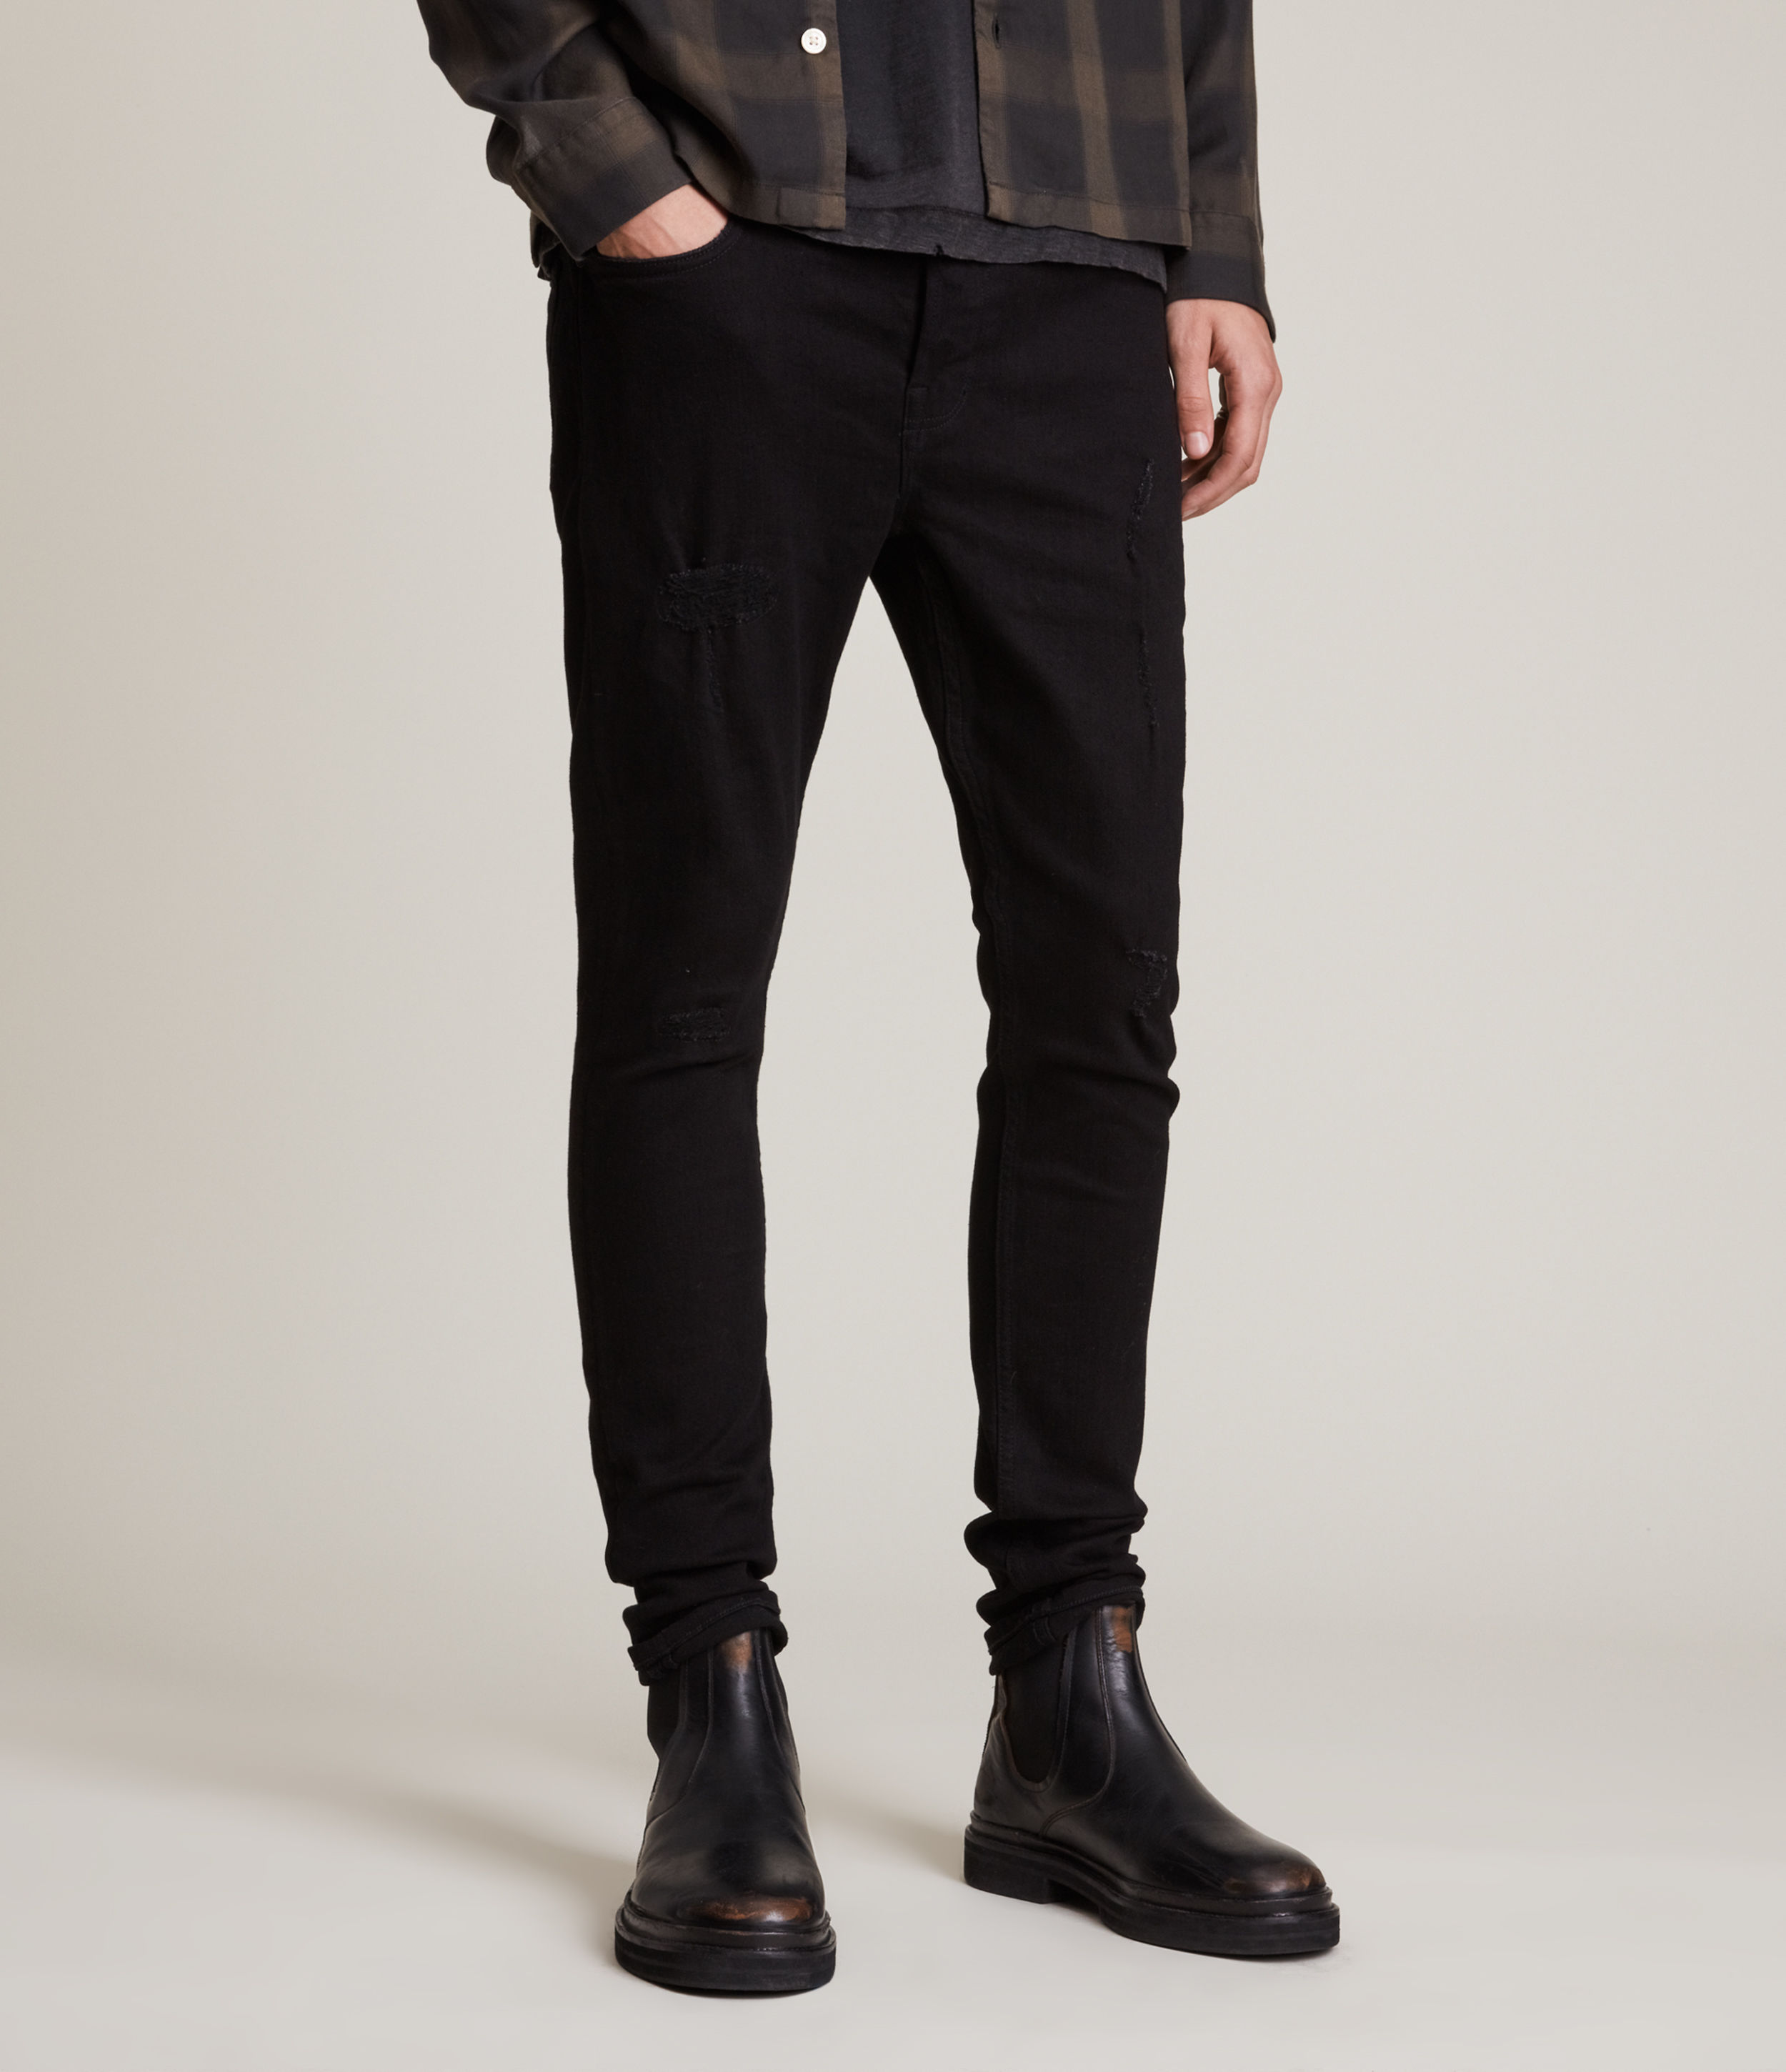 AllSaints Men’s Cigarette Damaged Skinny Jeans, Black, Size: 36/L30